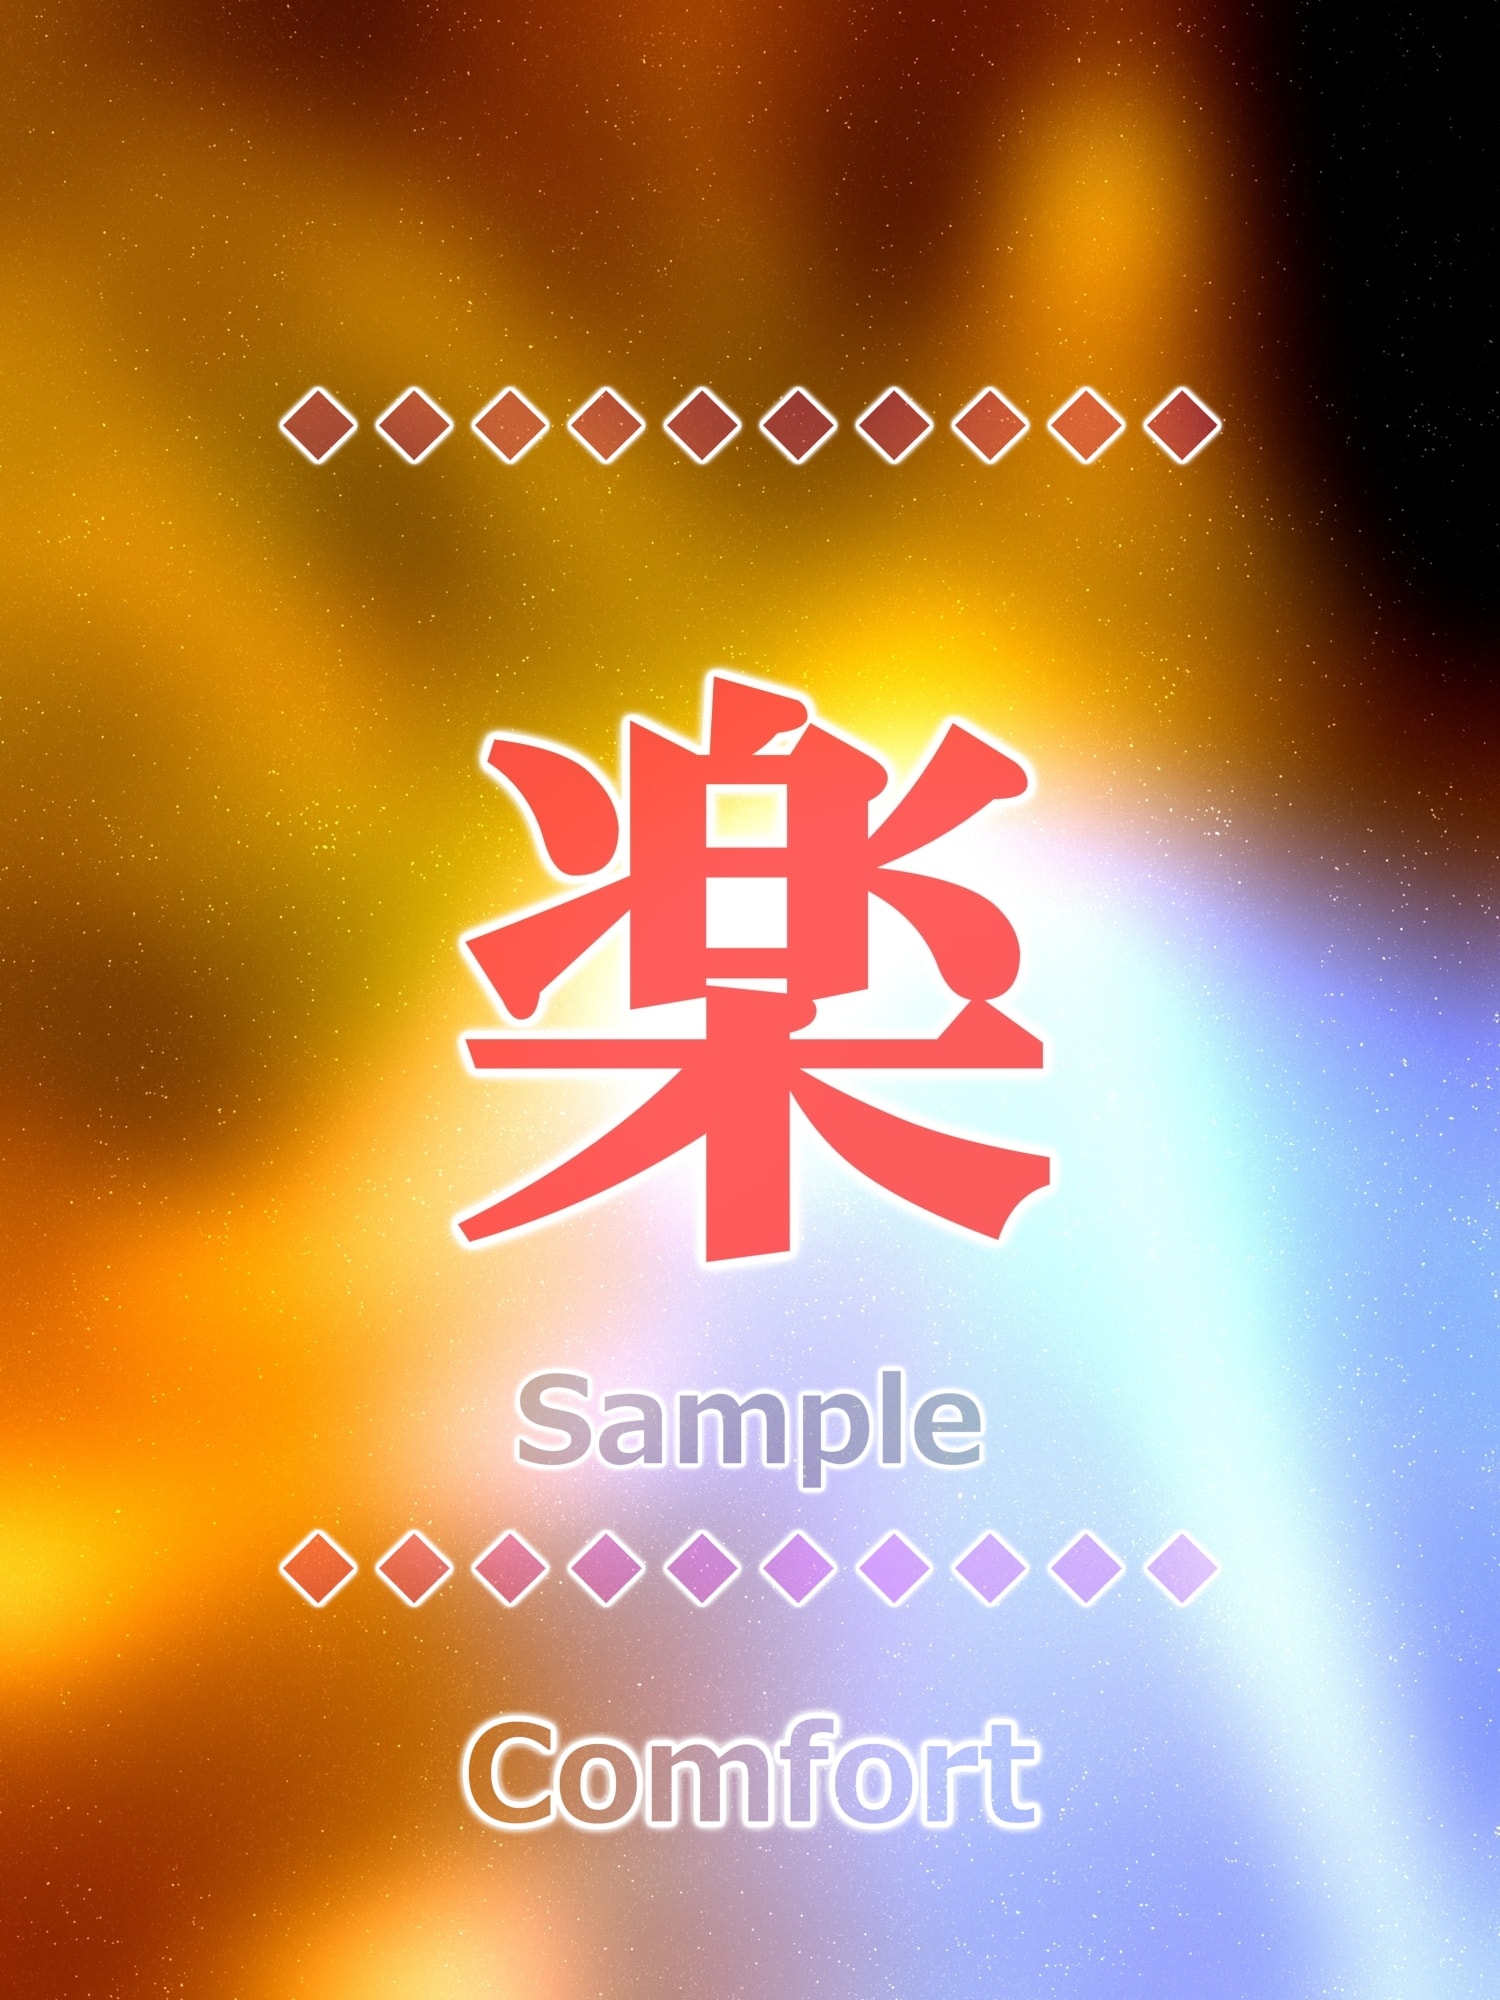 楽 comfort Kanji buena suerte encanto amuleto arte glossy